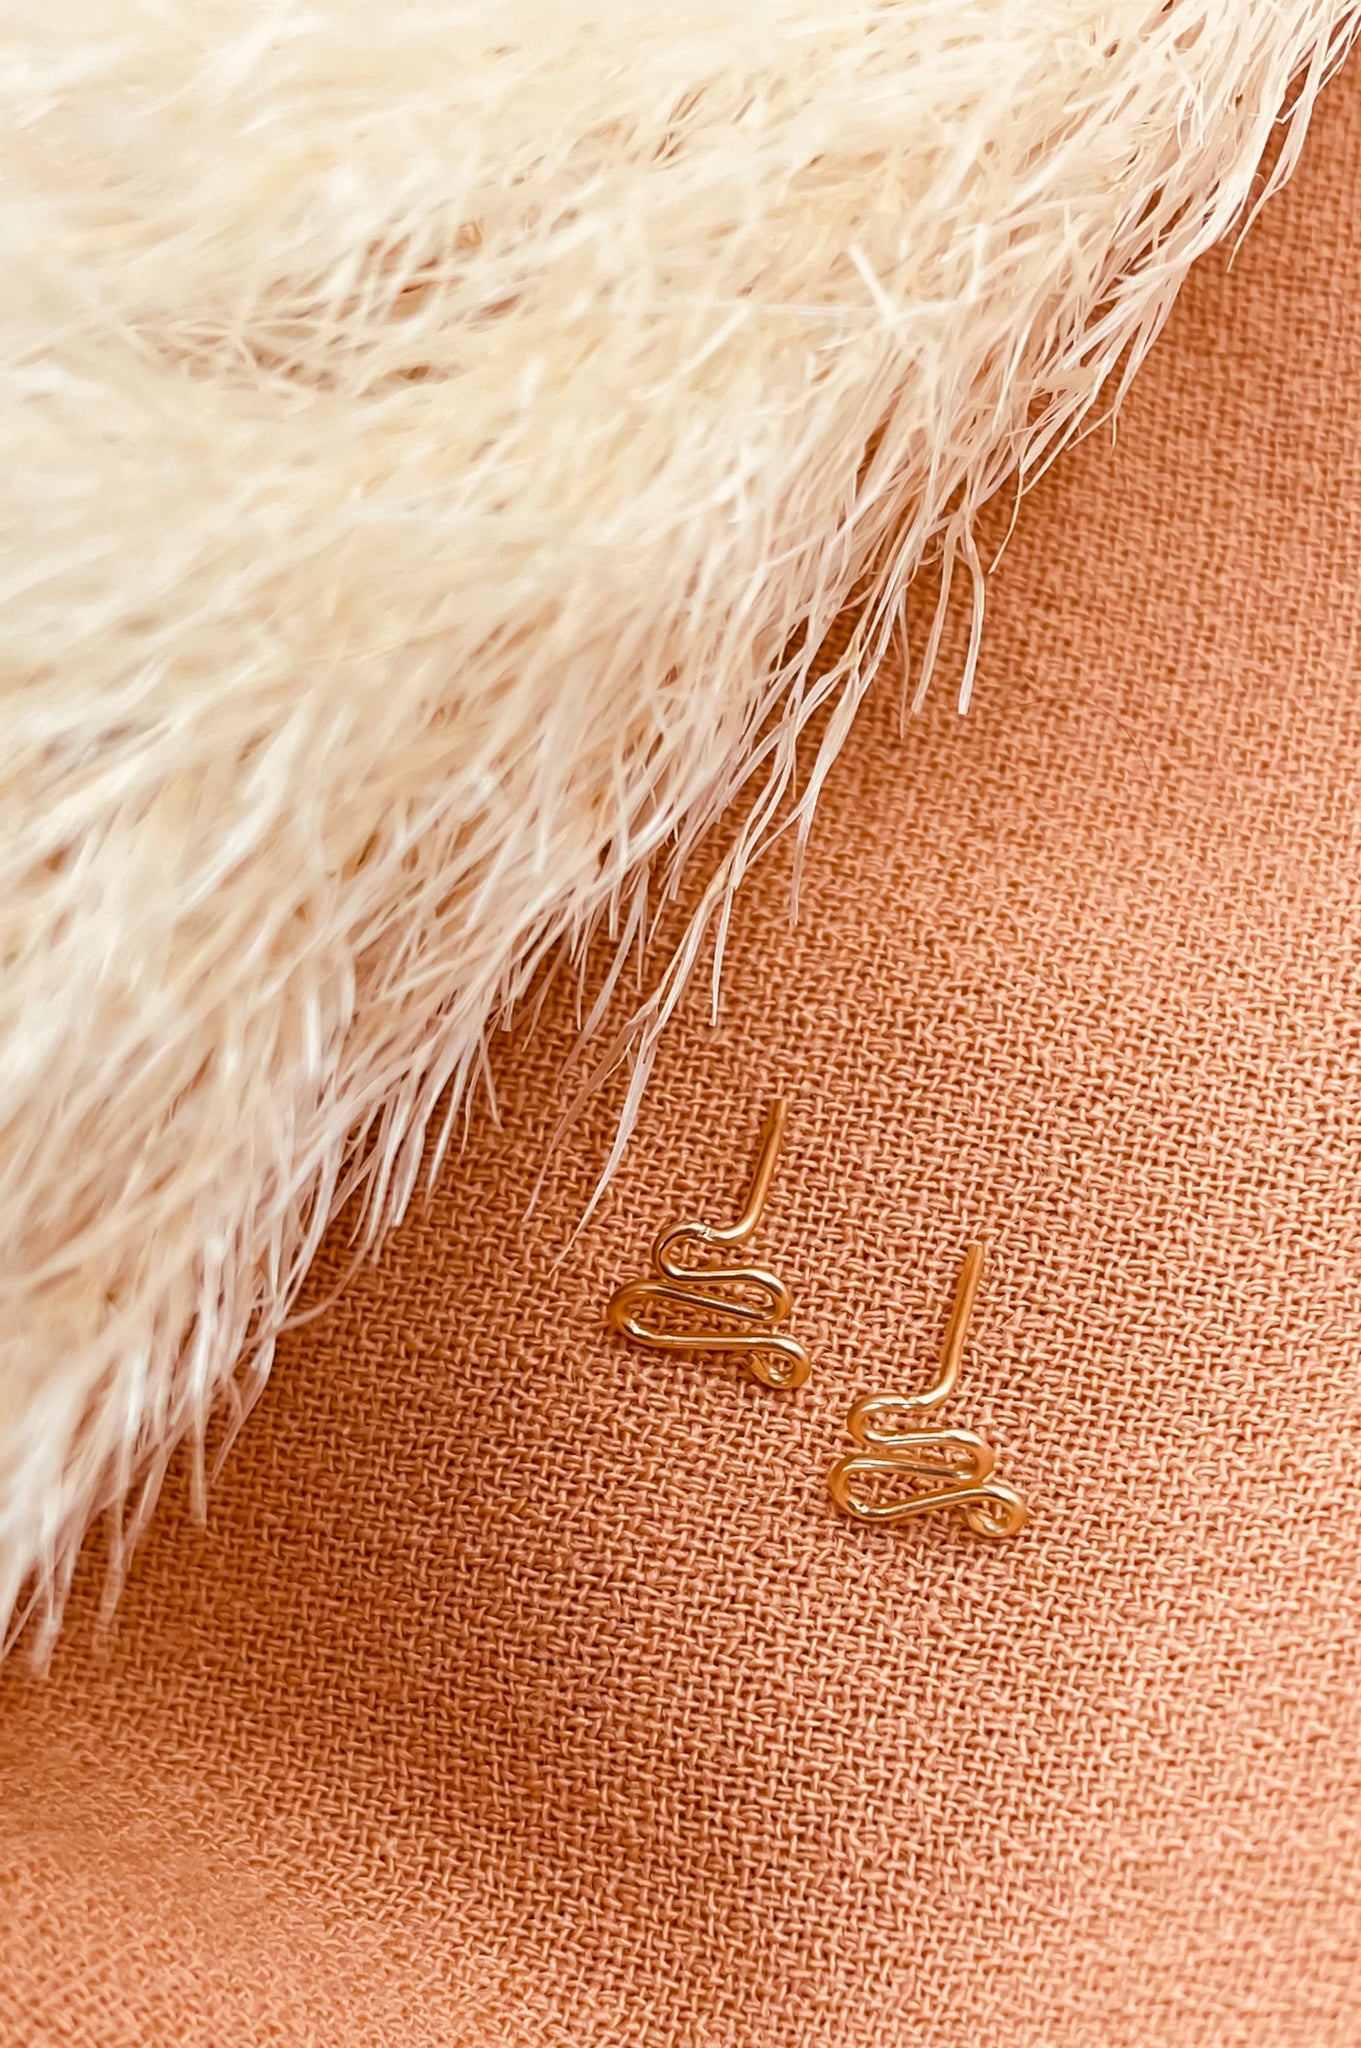 Petites boucles d'oreilles dorées en forme de serpent en fil gold filled sur fond de tissu orange